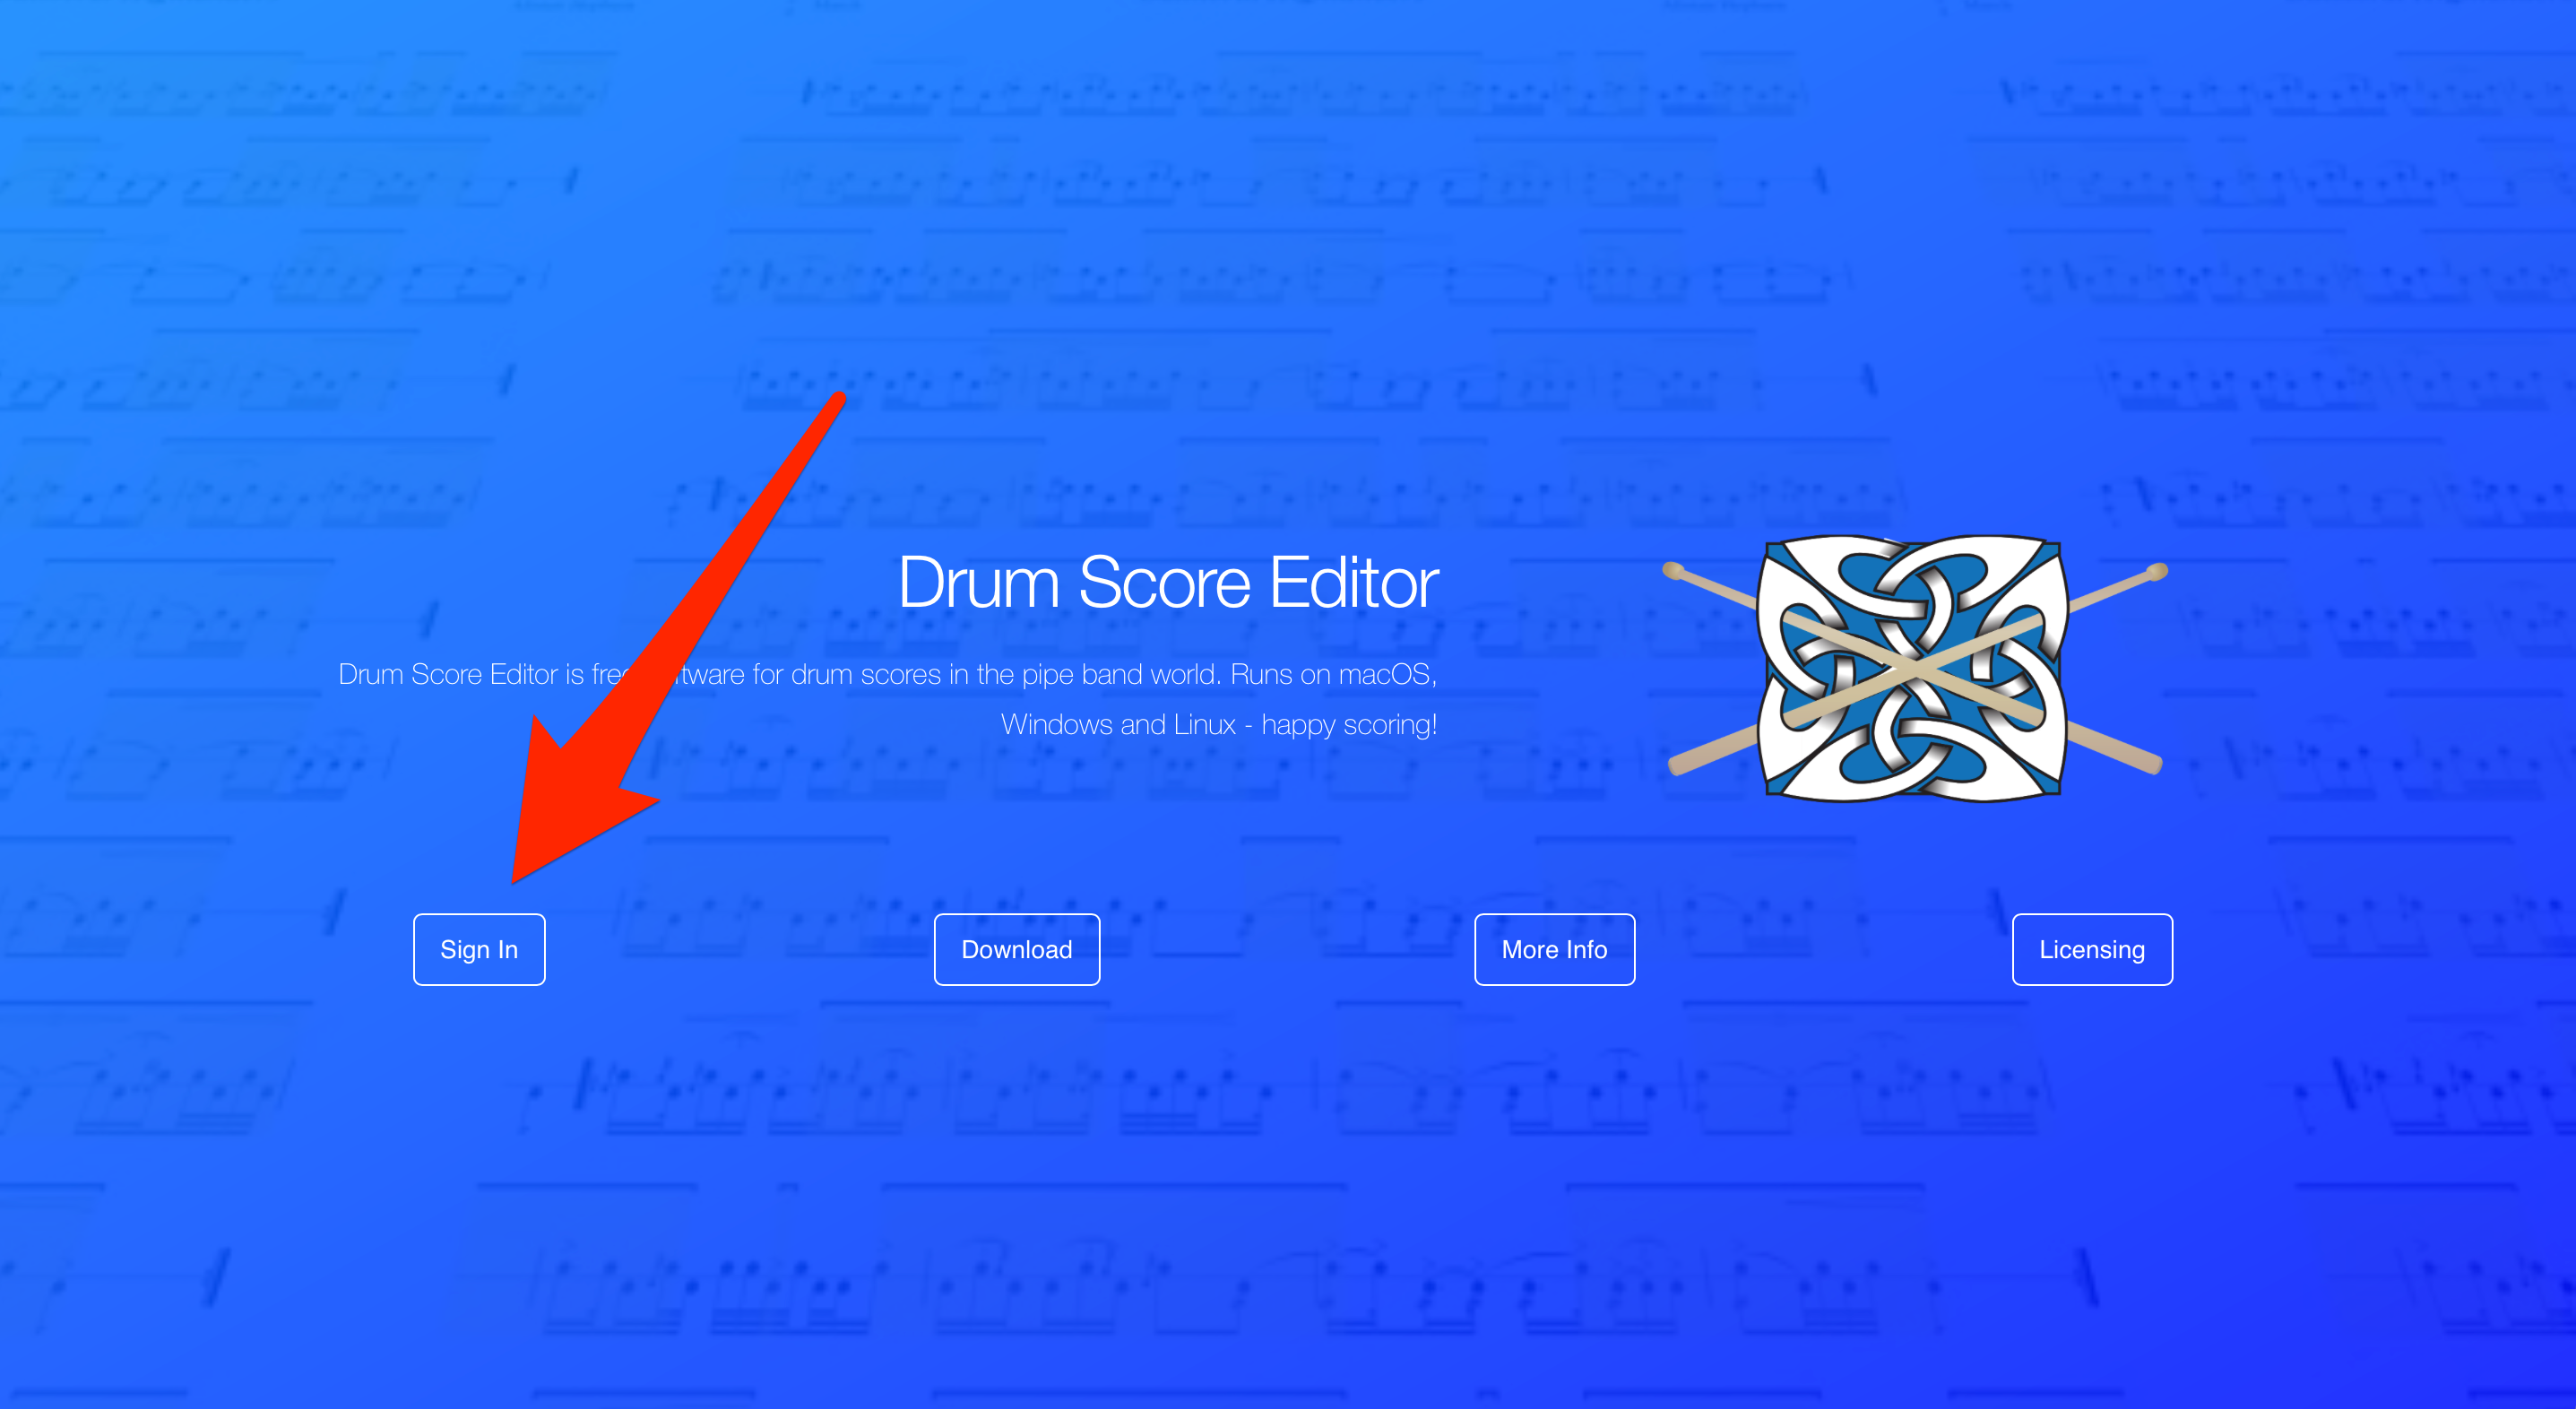 Drum Score Editor - Documentation